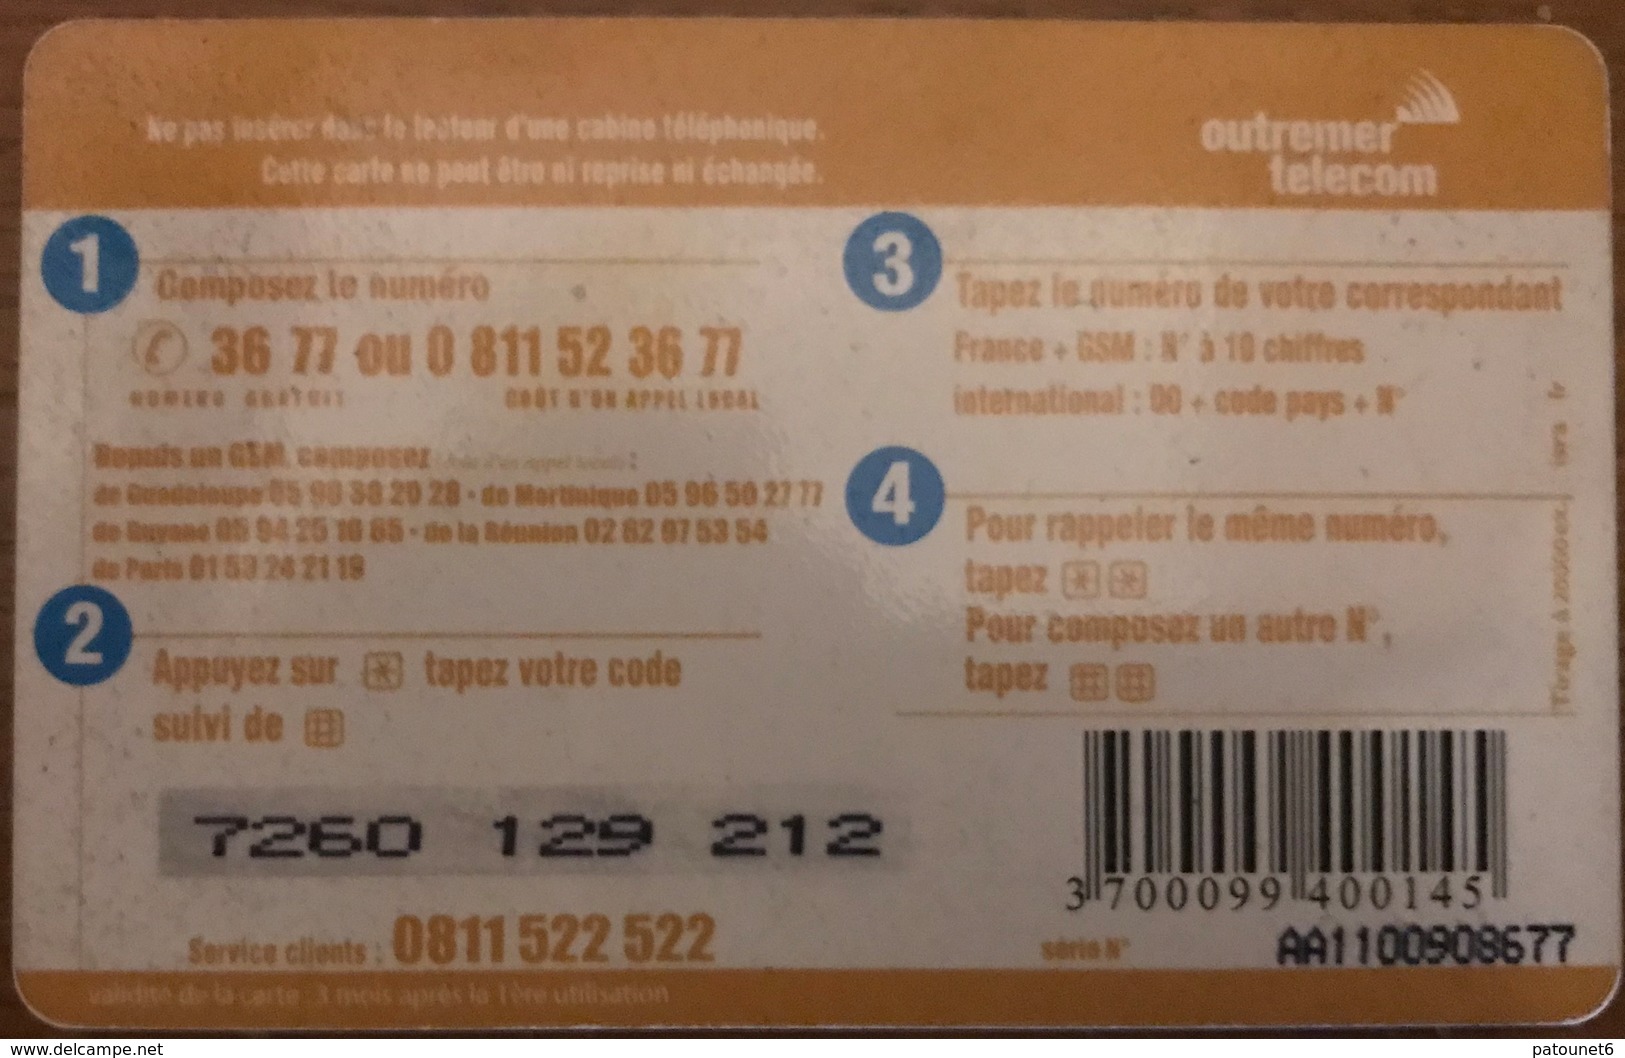 ANTILLES FRANCAISES - Outremer Telecom - Océan Indien - 10 Euros - Antillen (Französische)